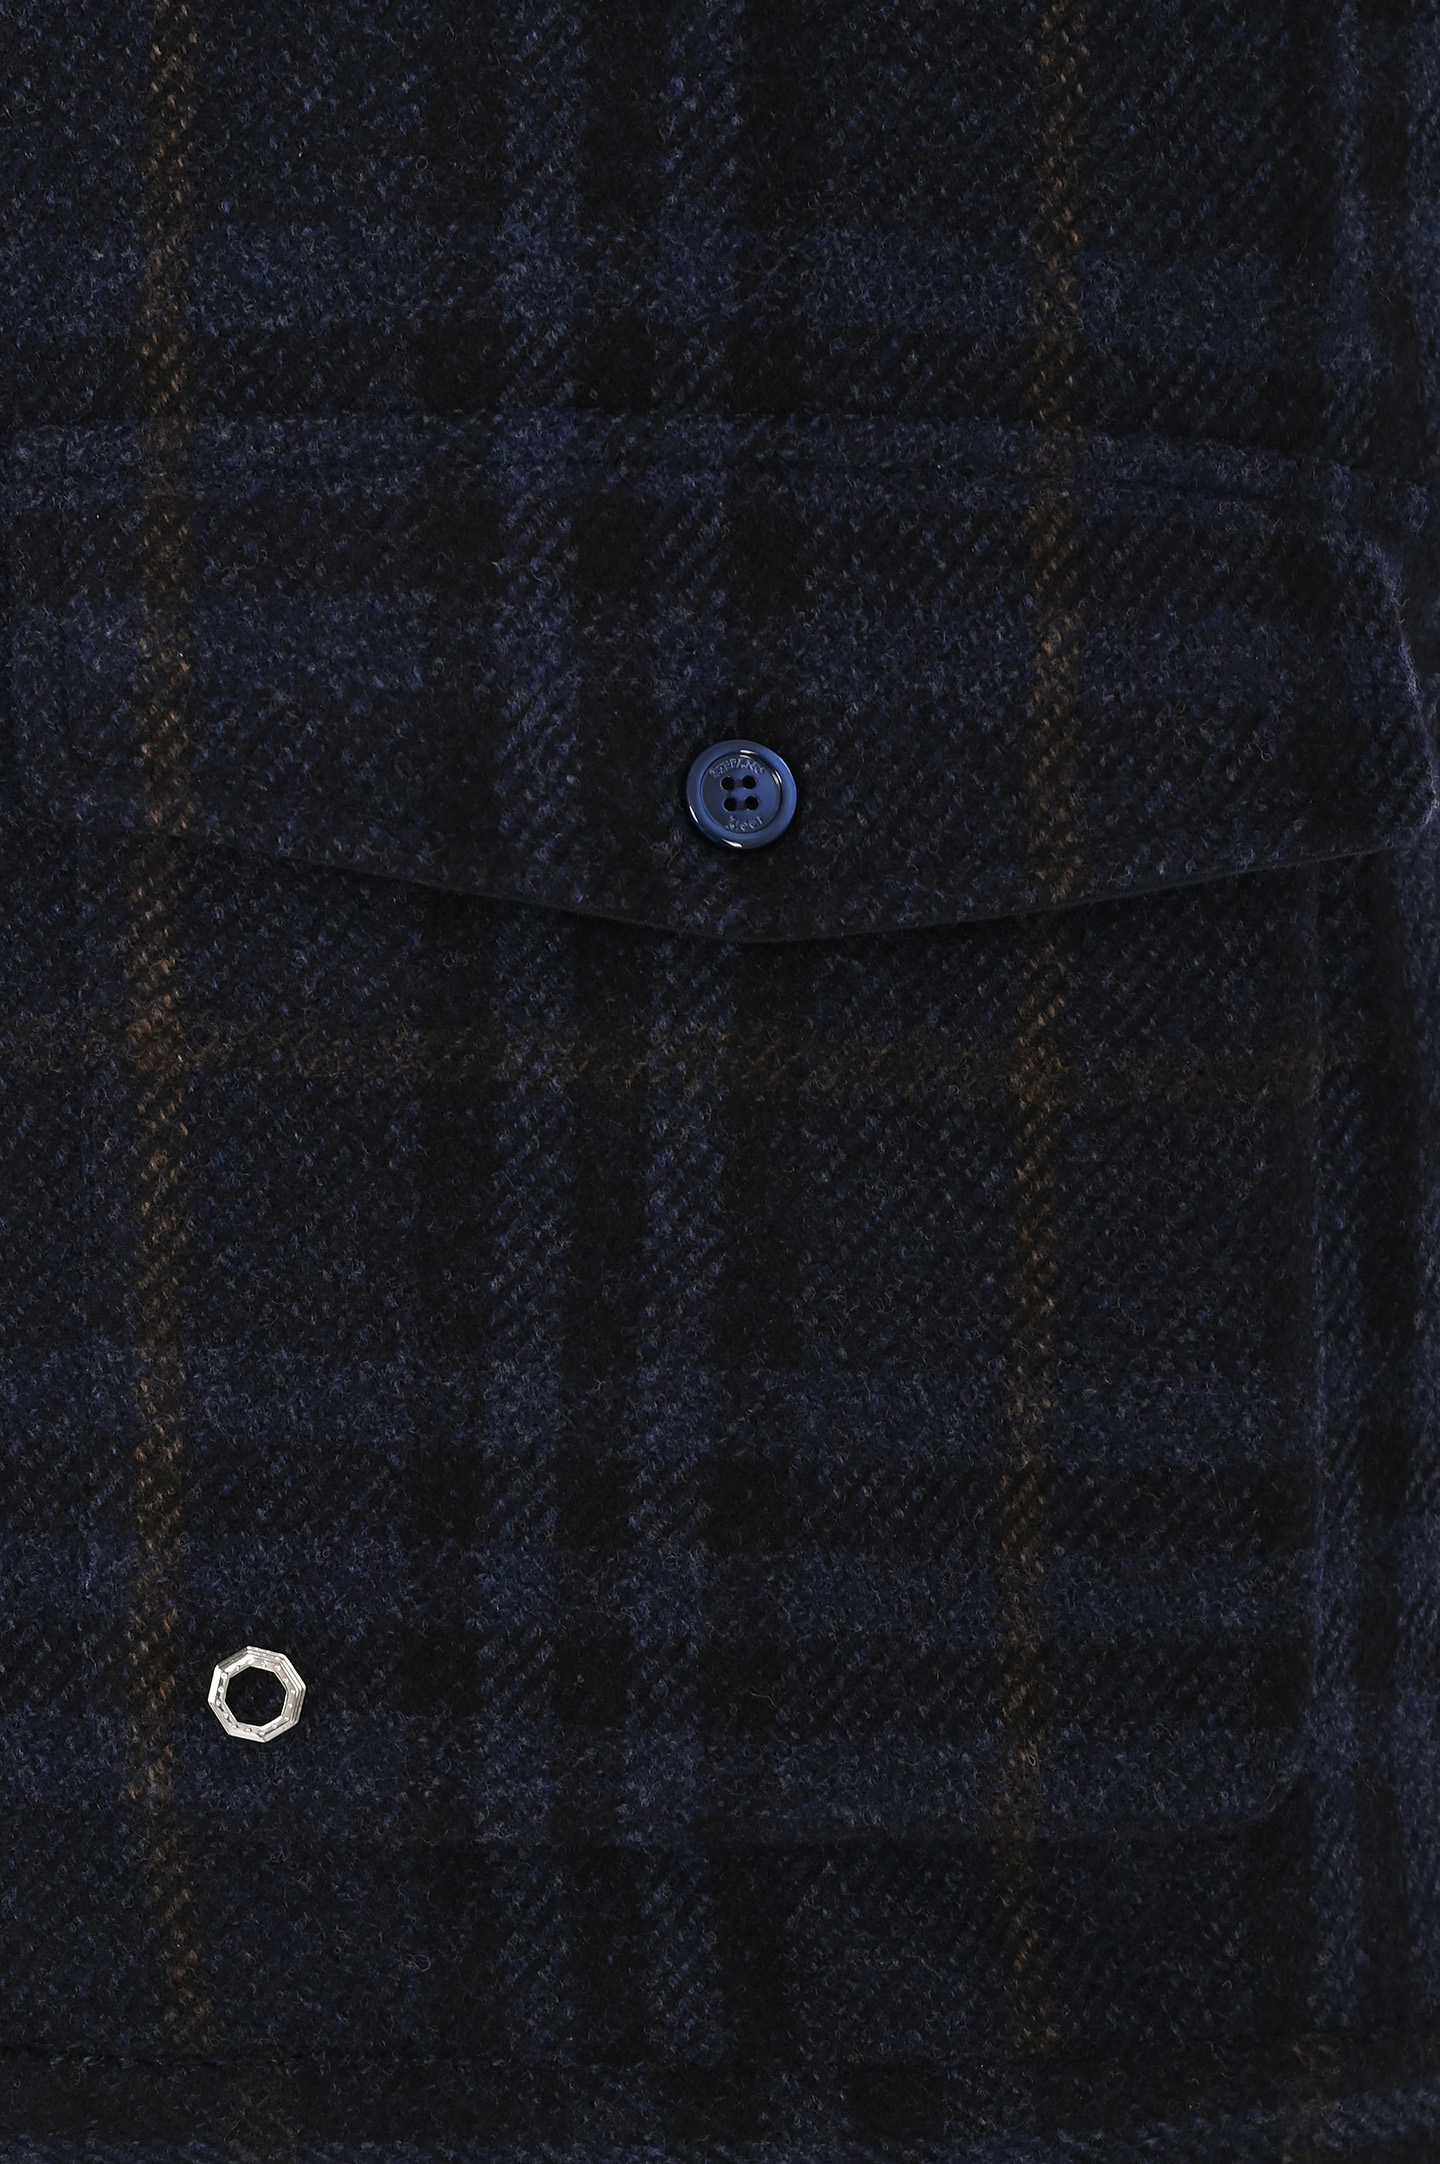 Рубашка-пиджак из шерсти и кашемира STEFANO RICCI MC007099 WC005P, цвет: Темно-синий, Мужской